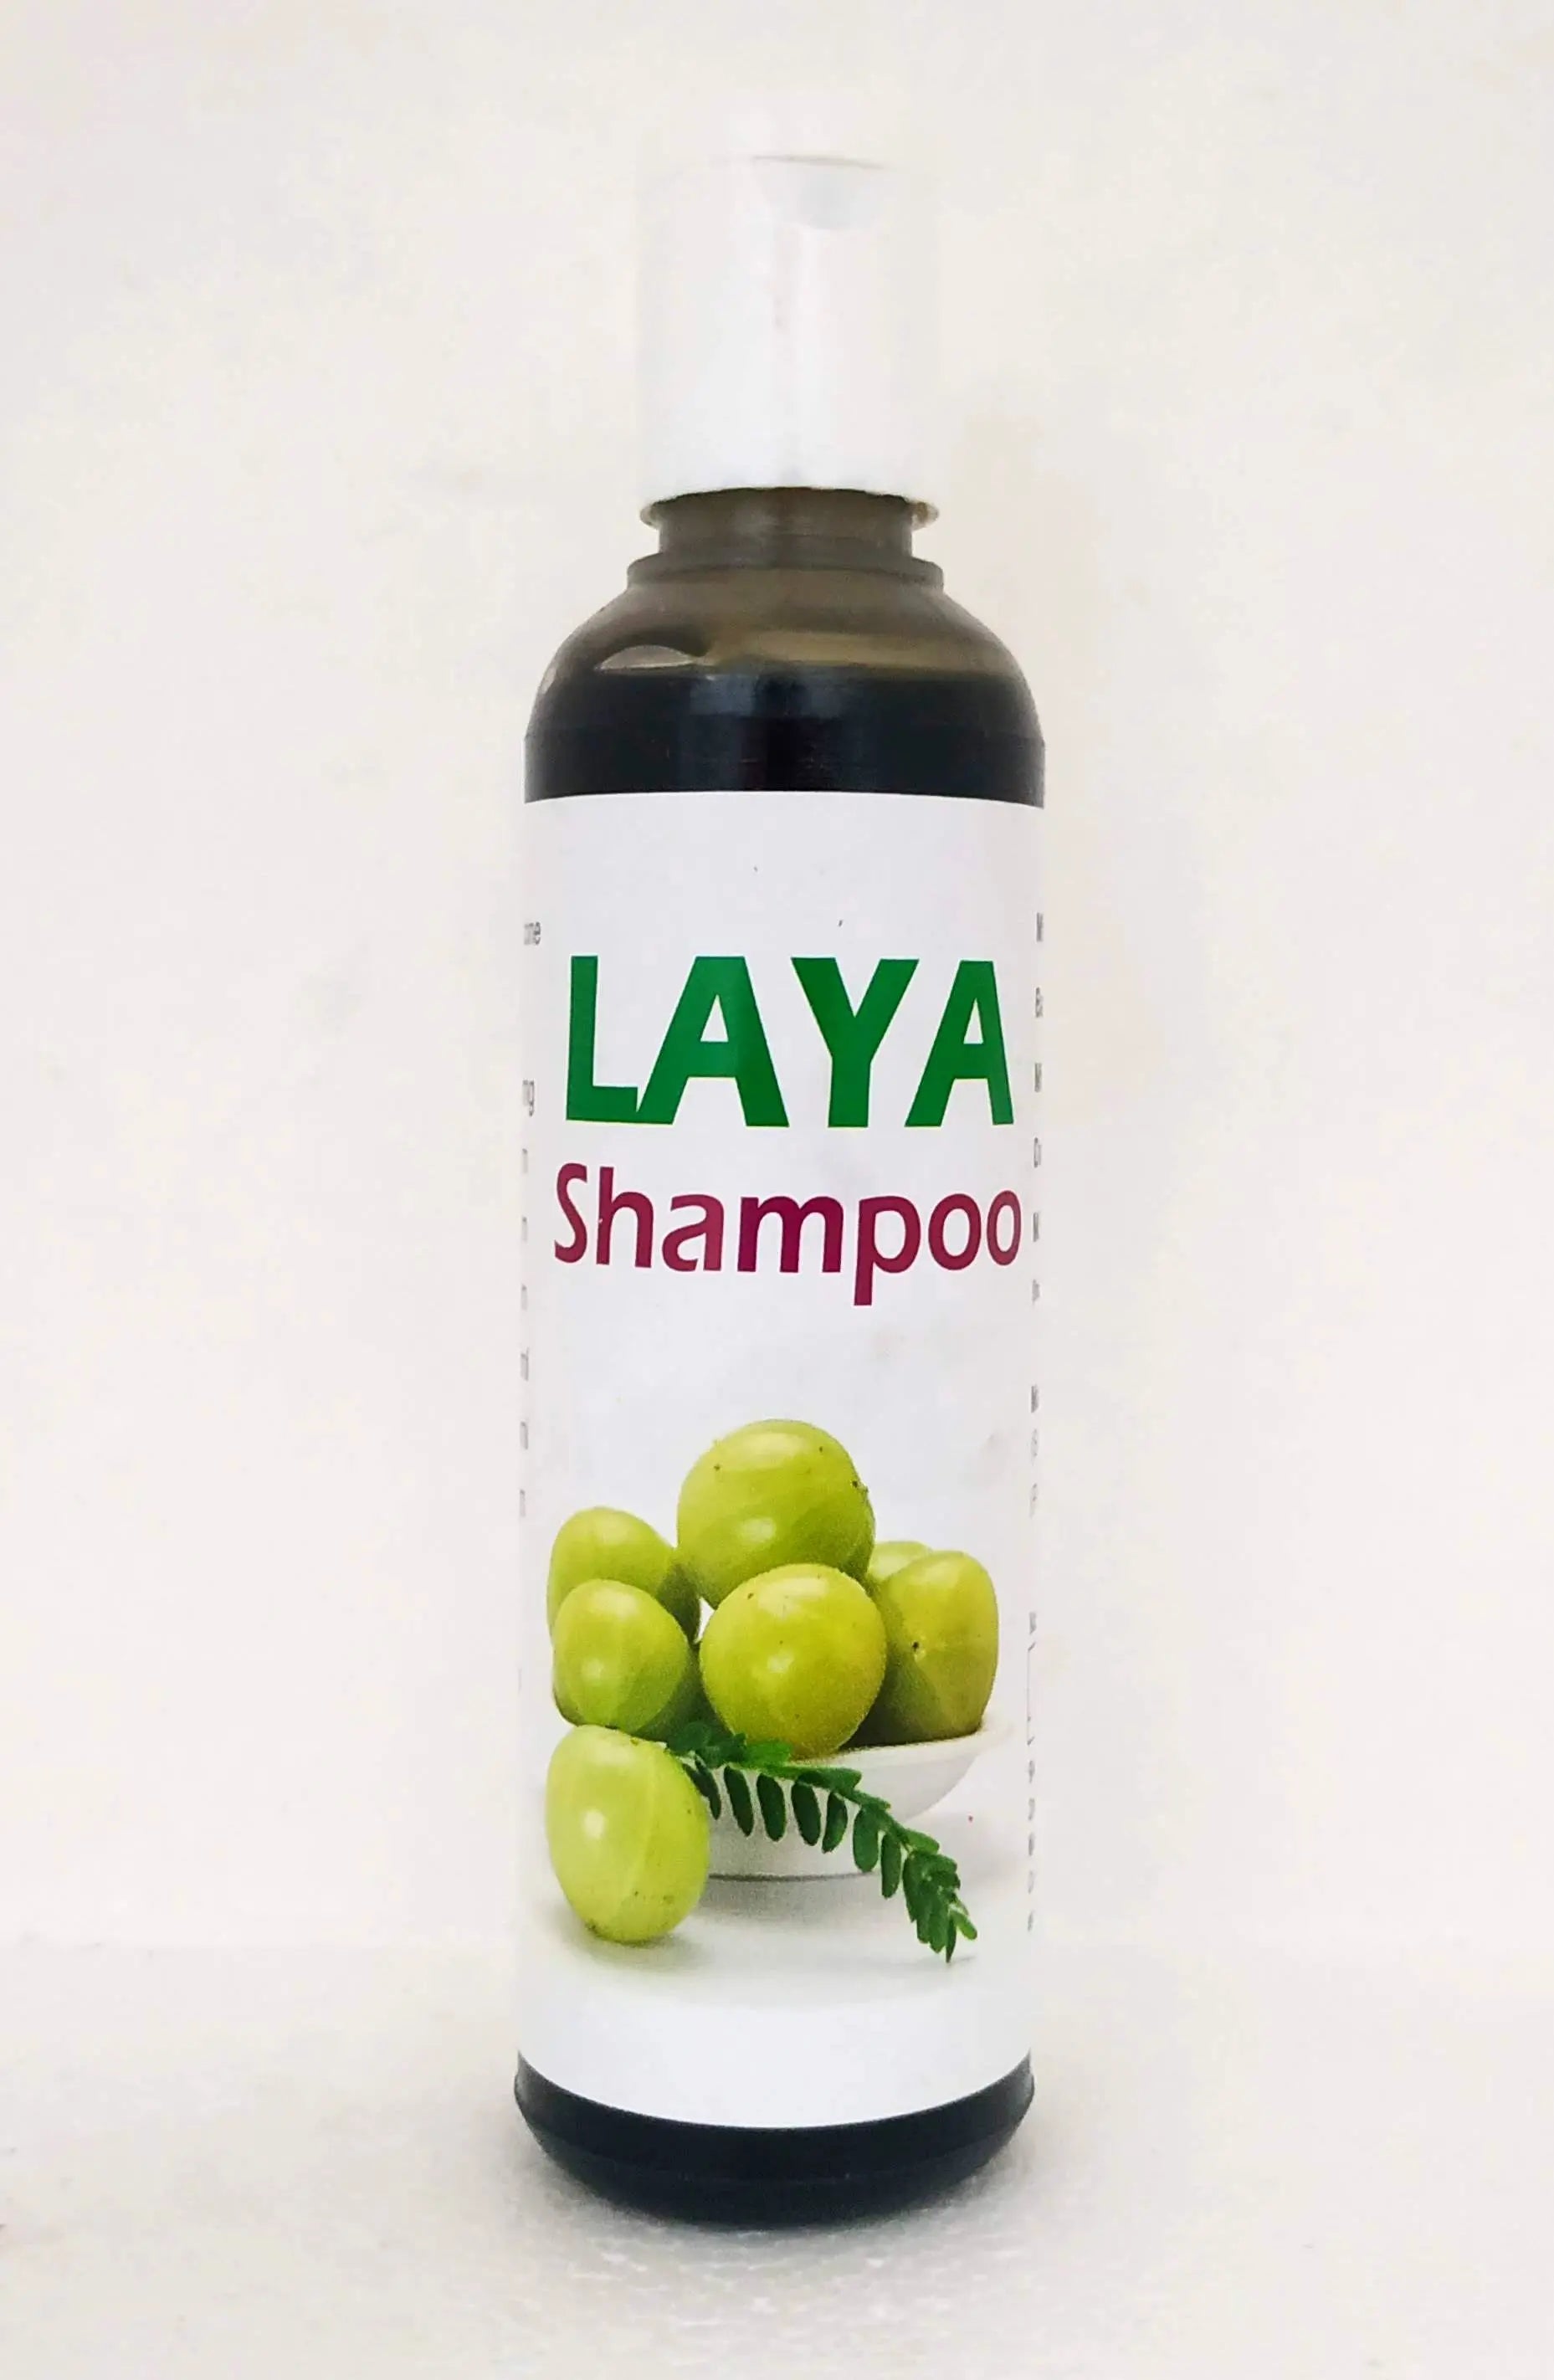 Laya amla shampoo 100ml Laya